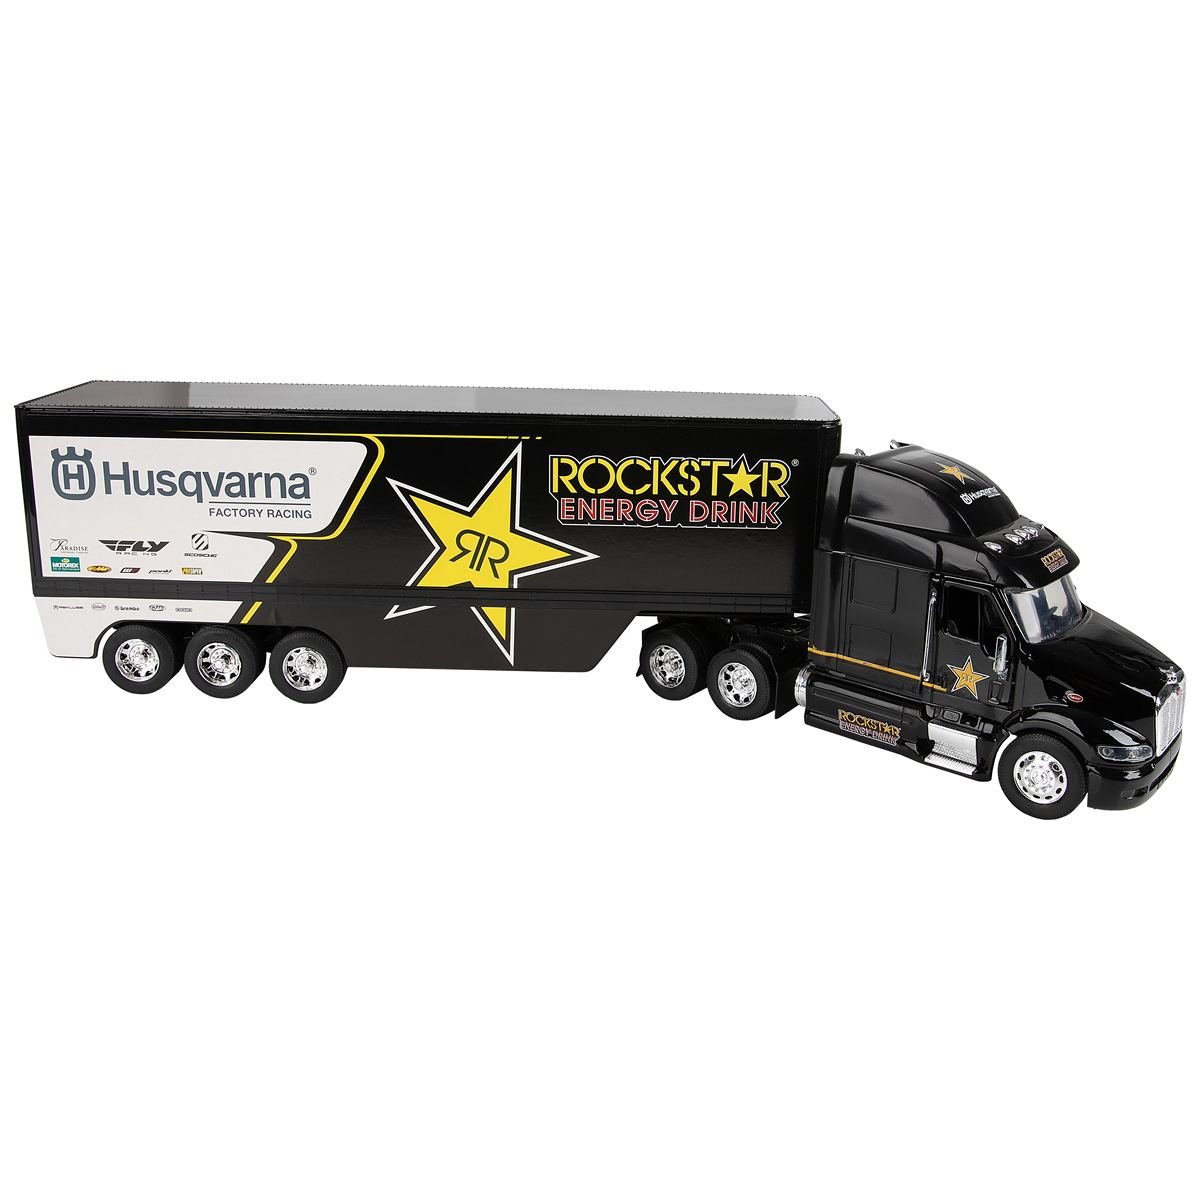 Miniatuur Truck  Team Husqvarna Rockstar, 1:32